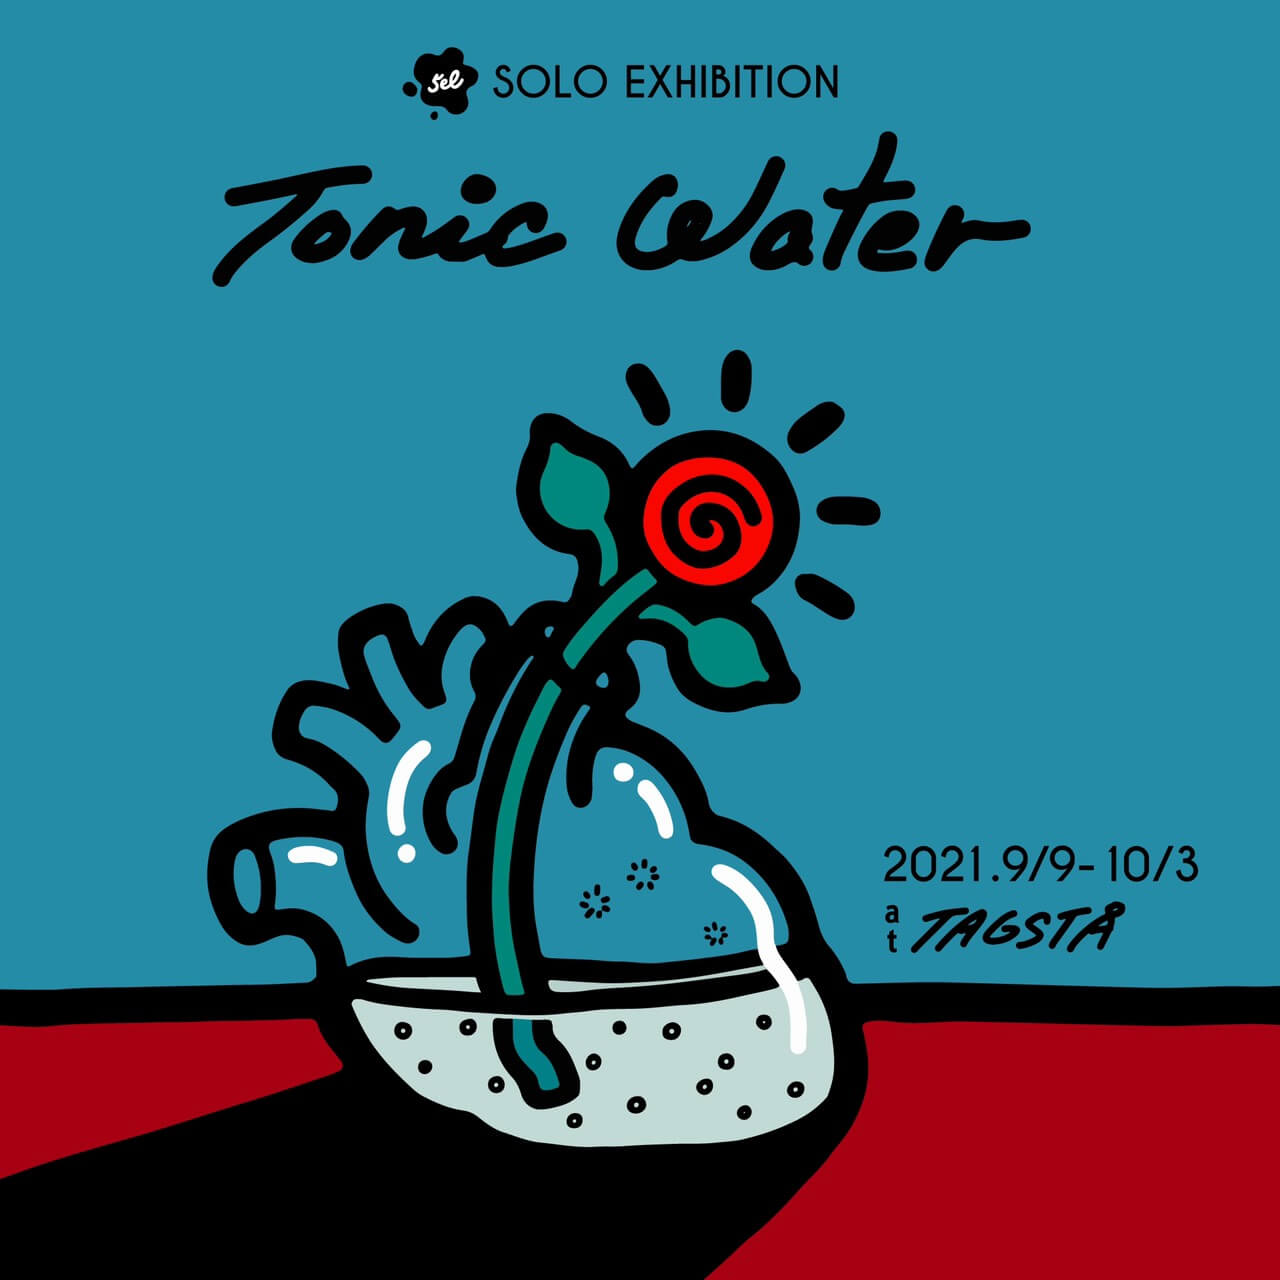 5el Solo Exhibition 『 Tonic Water 』 Fukuoka Art Week